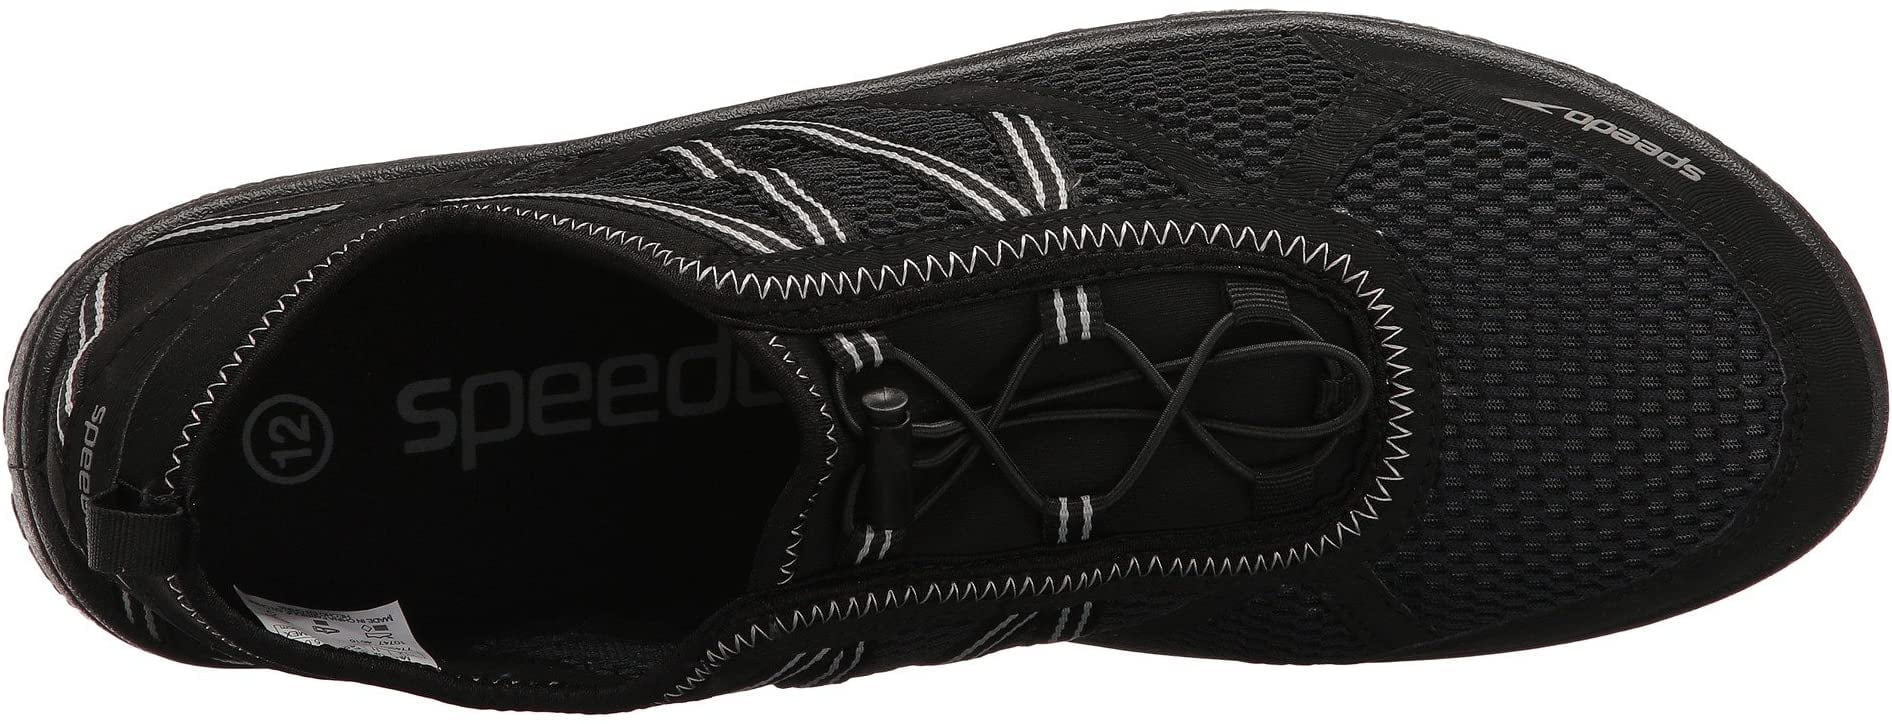 speedo men's seaside lace 5. athletic water shoe